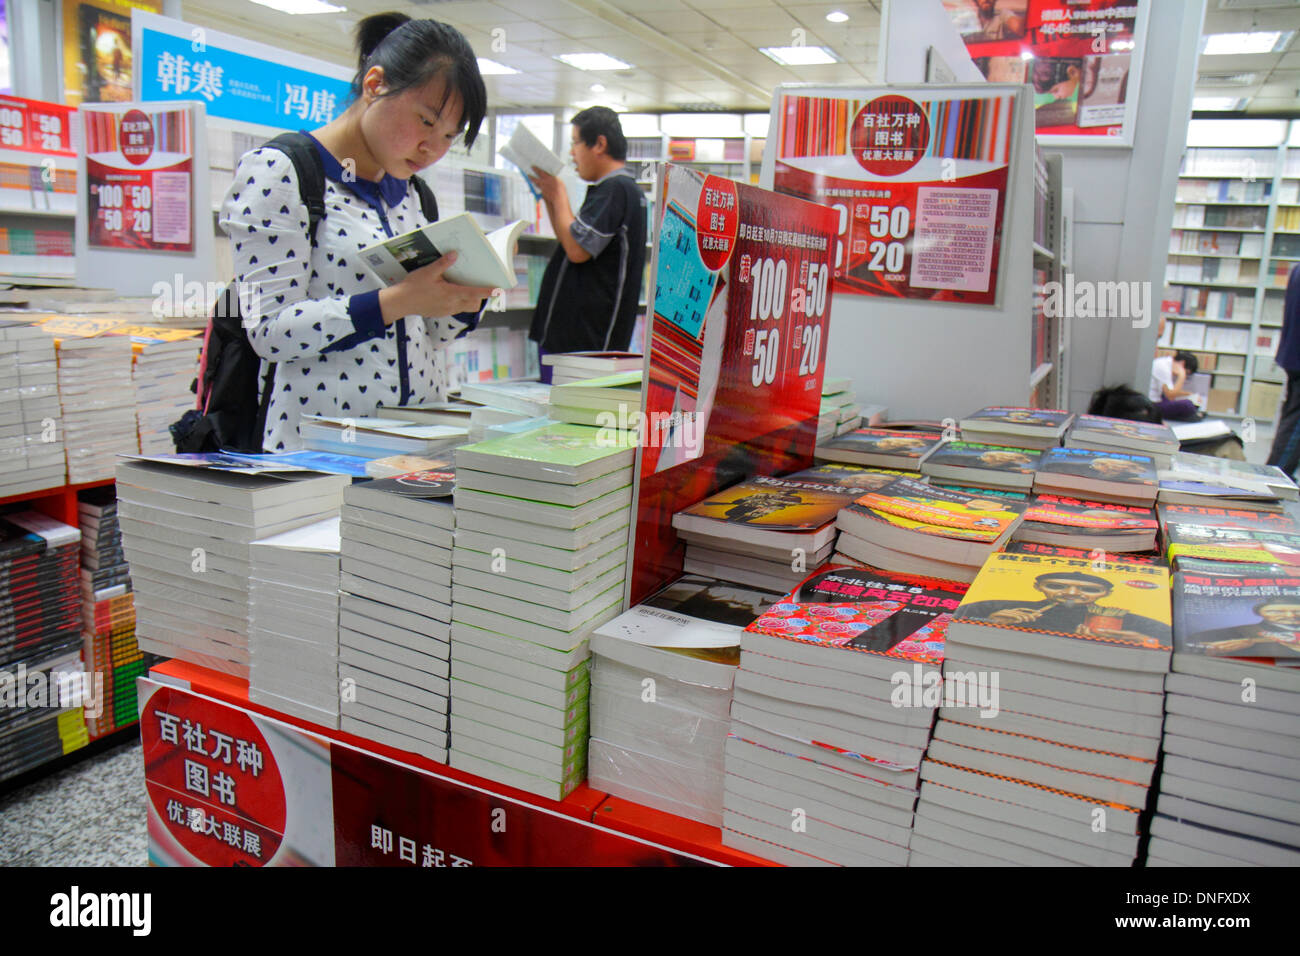 Beijing China,Chinese,Wangfujing Xinhua Bookstore,shopping shopper shoppers shop shops market markets marketplace buying selling,retail store stores b Stock Photo